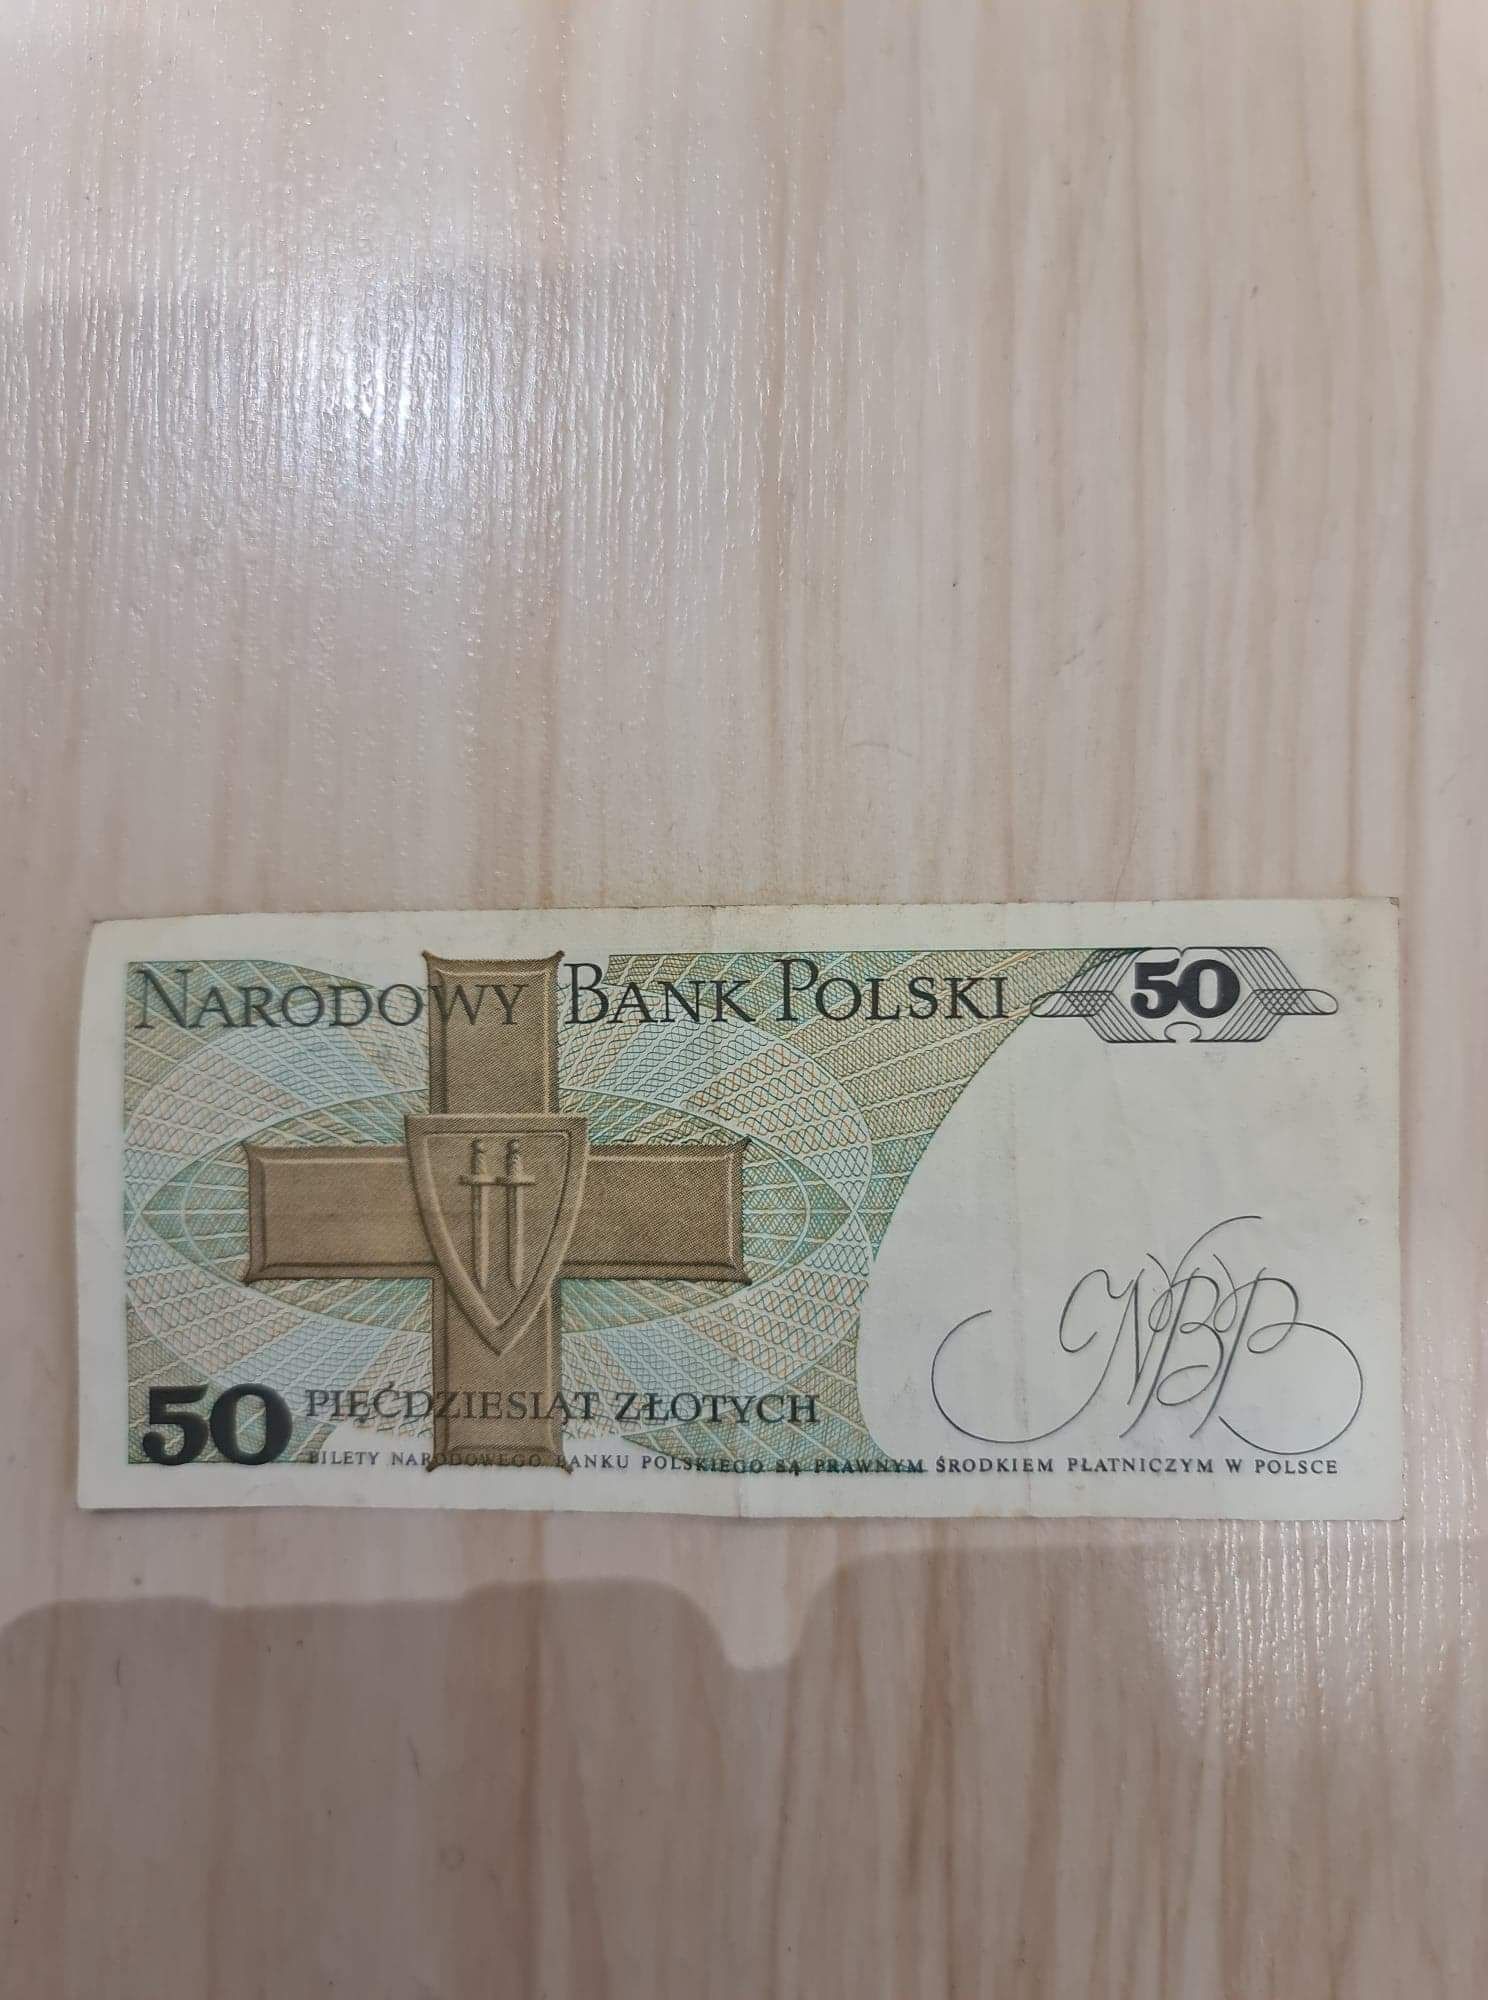 Banknot 50 złotych z 1988 roku